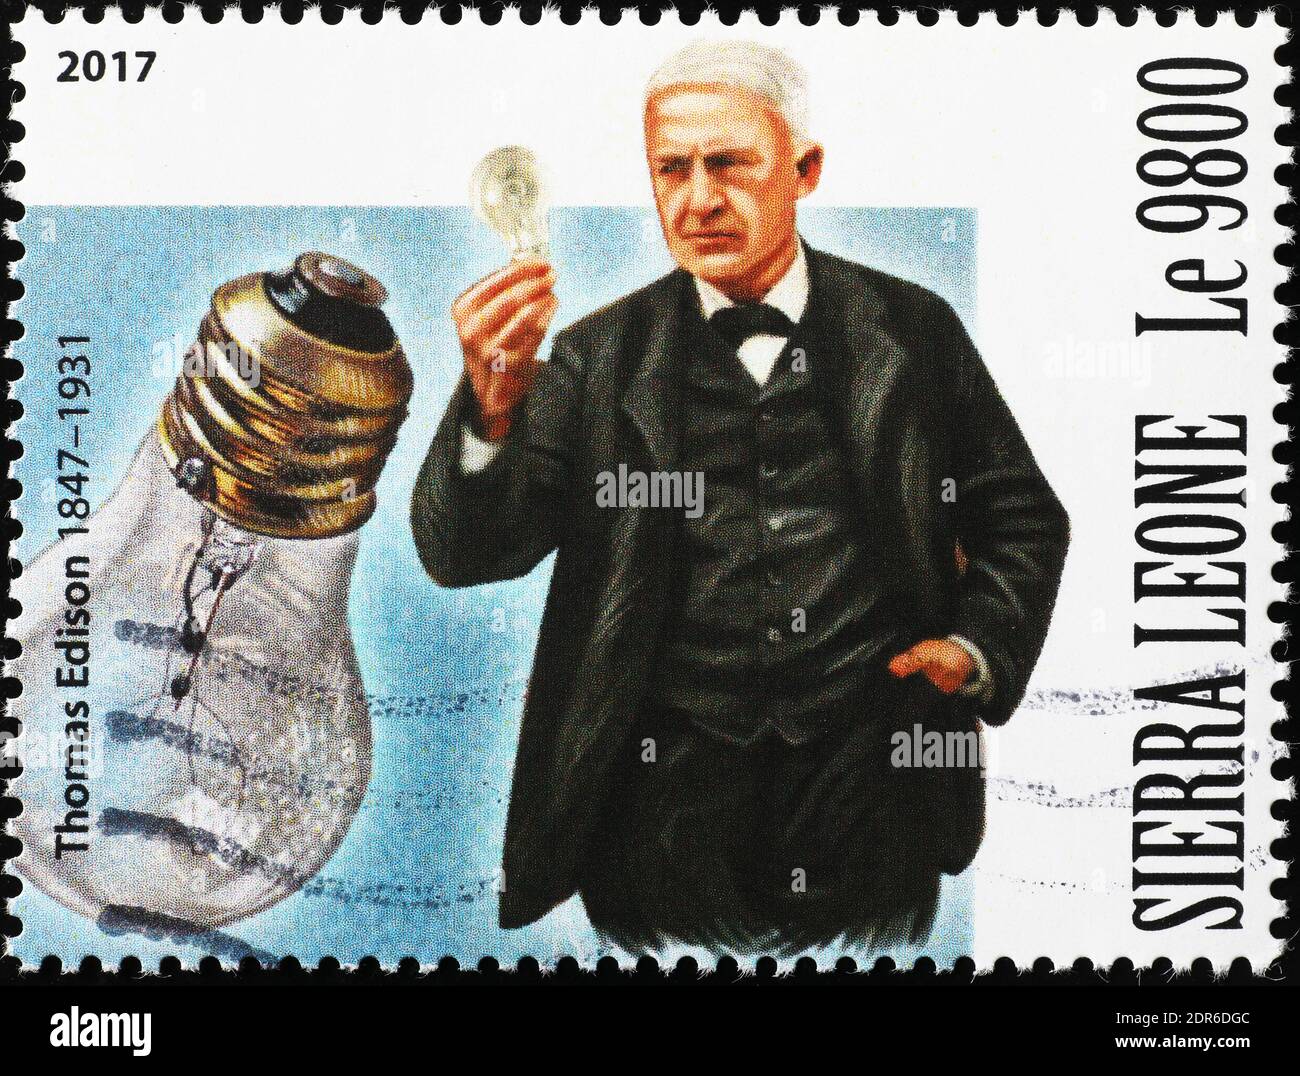 Thomas Edison portrait on postage stamp Stock Photo